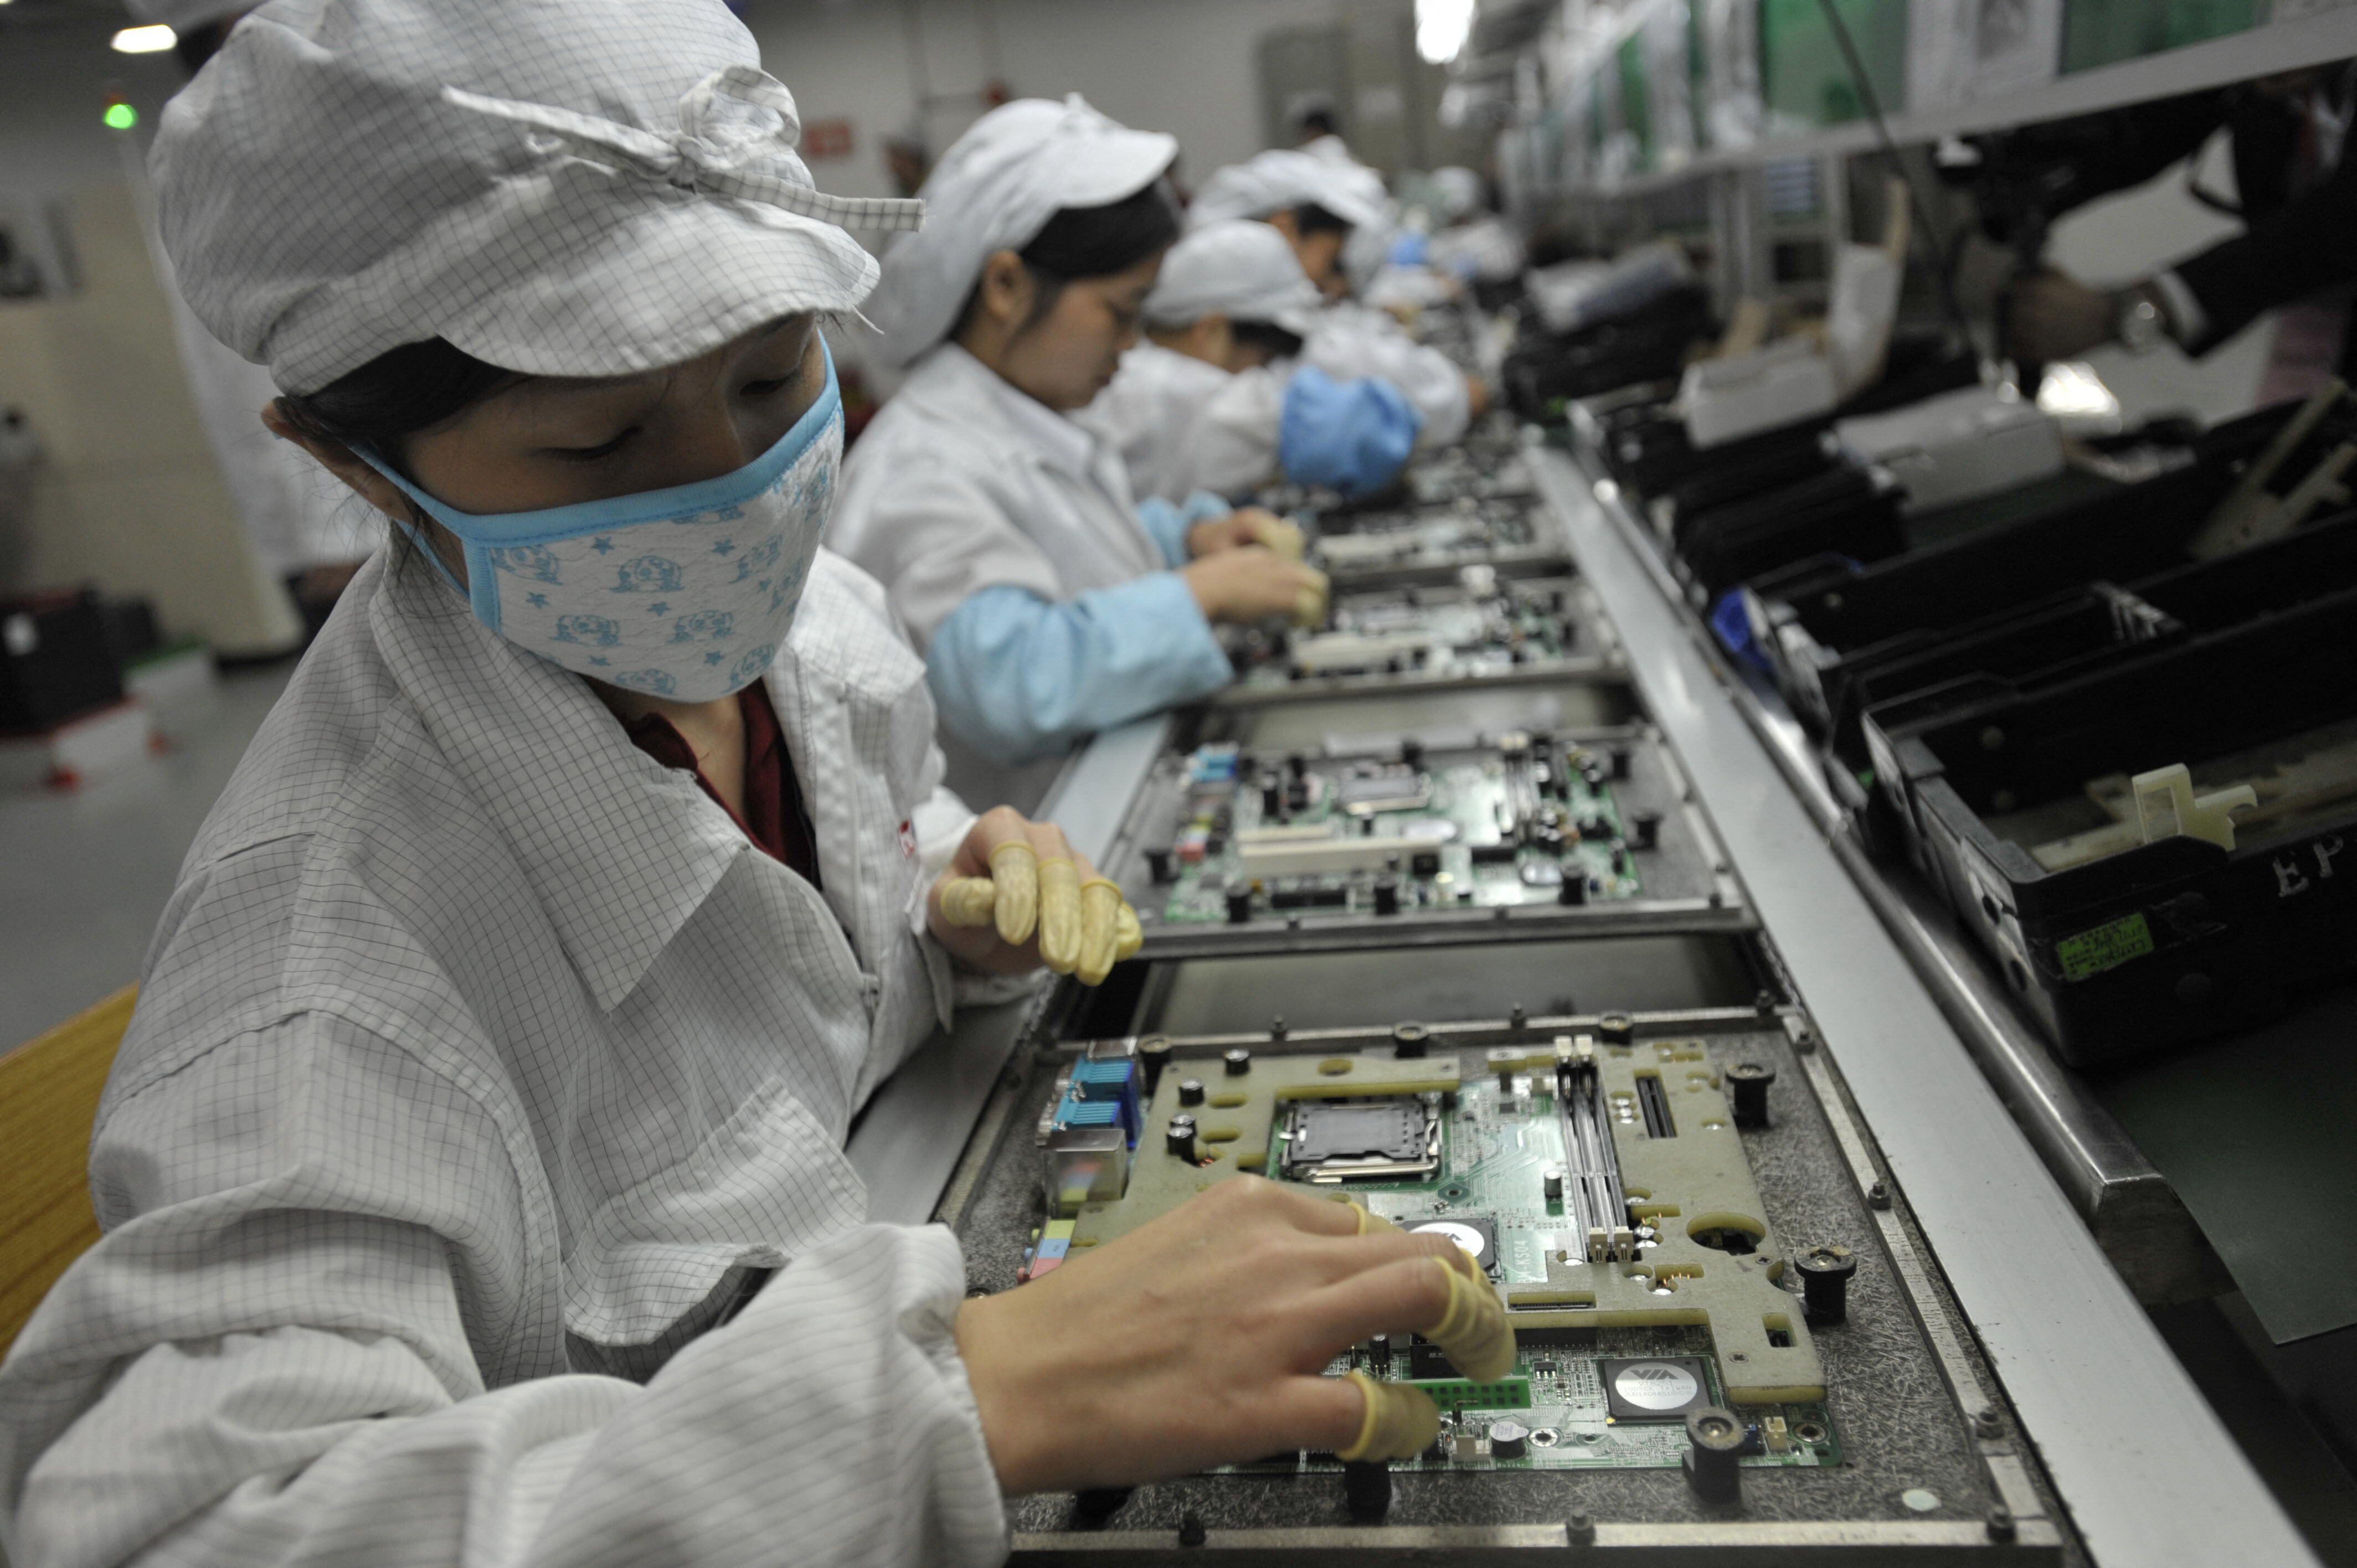 Esta foto de archivo tomada el 27 de mayo de 2010 muestra a los trabajadores chinos en la fábrica de Foxconn en Shenzhen, en la provincia de Guangdong, en el sur de China. - El 23 de noviembre de 2022 estallaron violentas protestas alrededor de la gran fábrica de iPhone de Foxconn en el centro de China, cuando los trabajadores se enfrentaron con el personal de seguridad por las restricciones de Covid en la planta